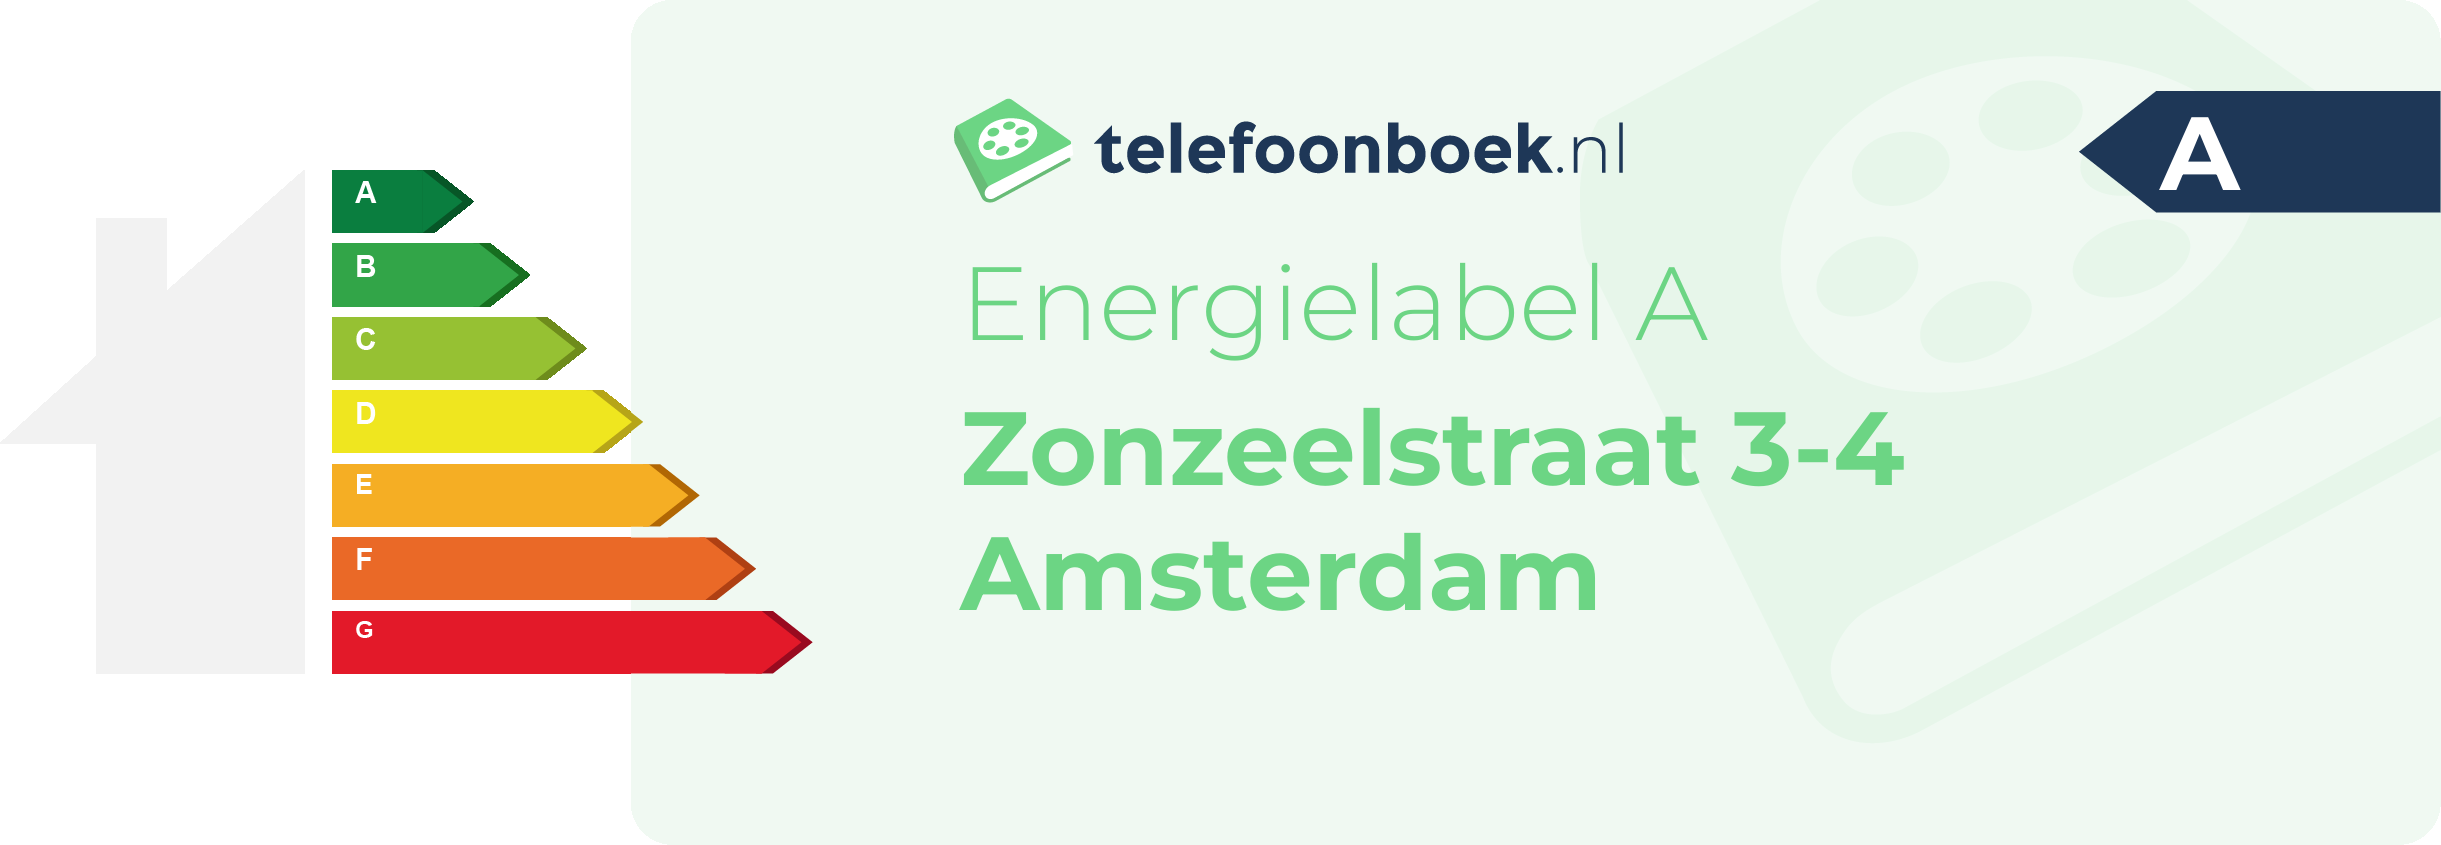 Energielabel Zonzeelstraat 3-4 Amsterdam